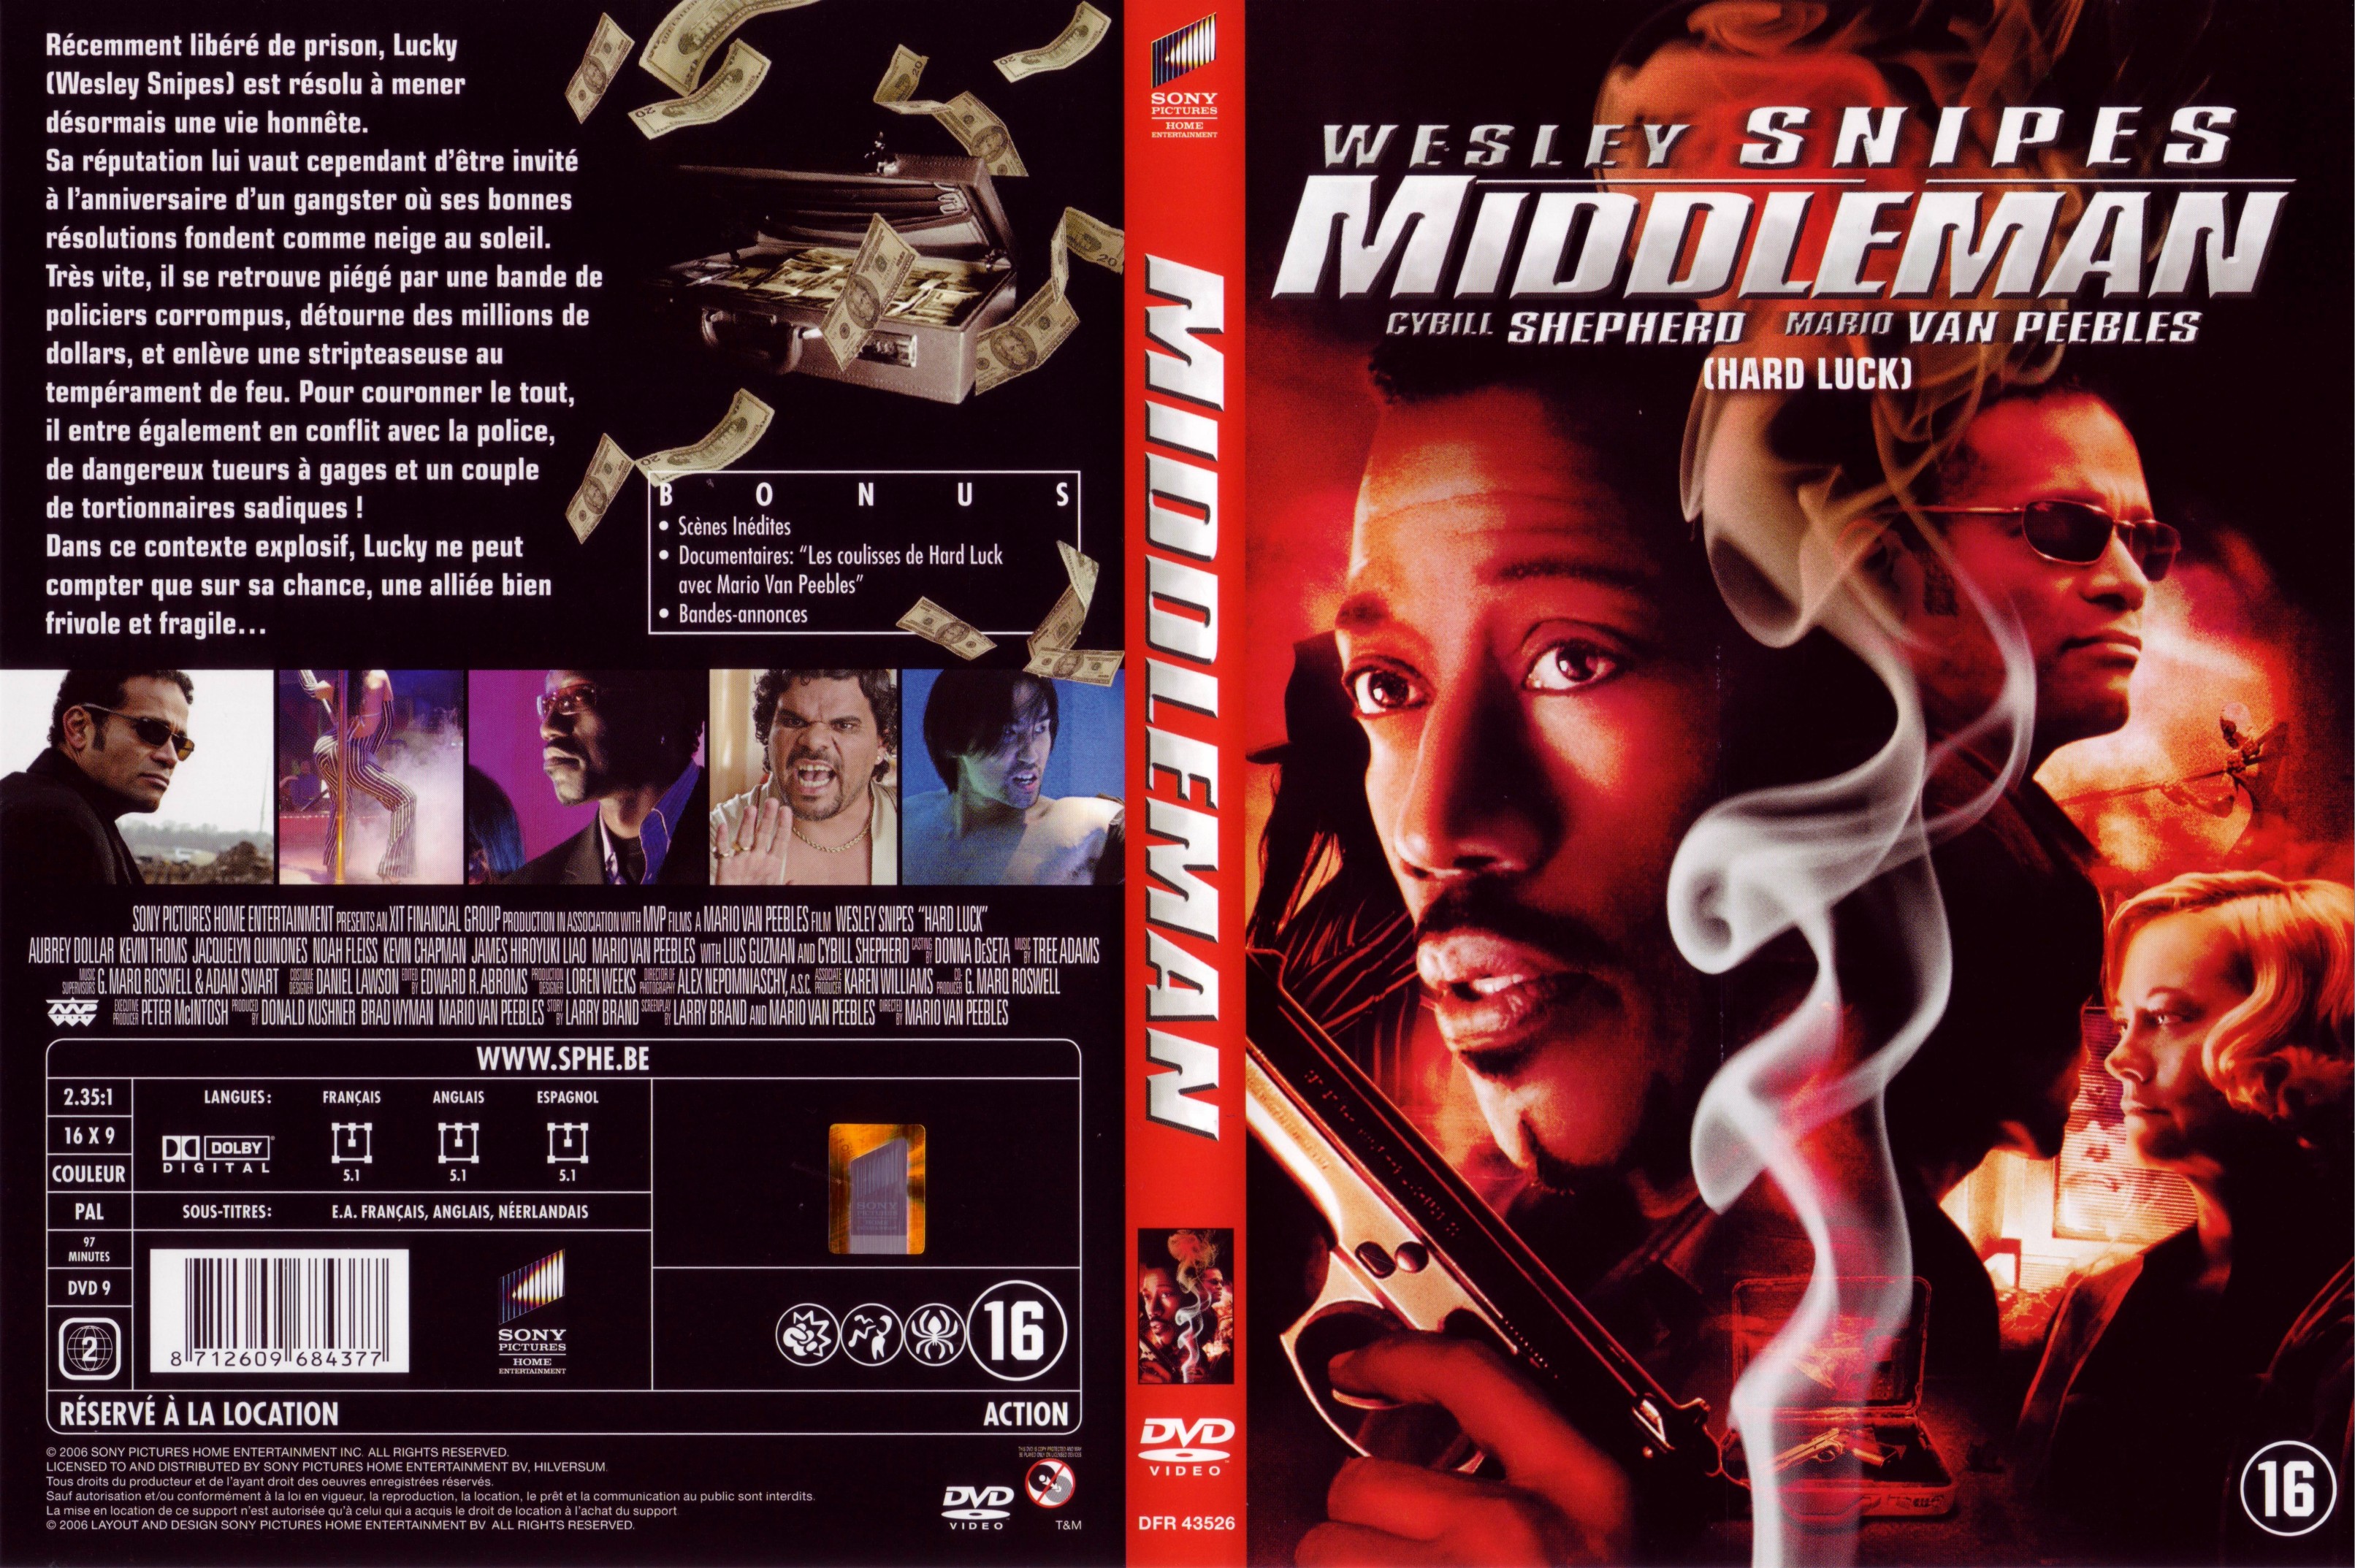 Jaquette DVD Middleman v2